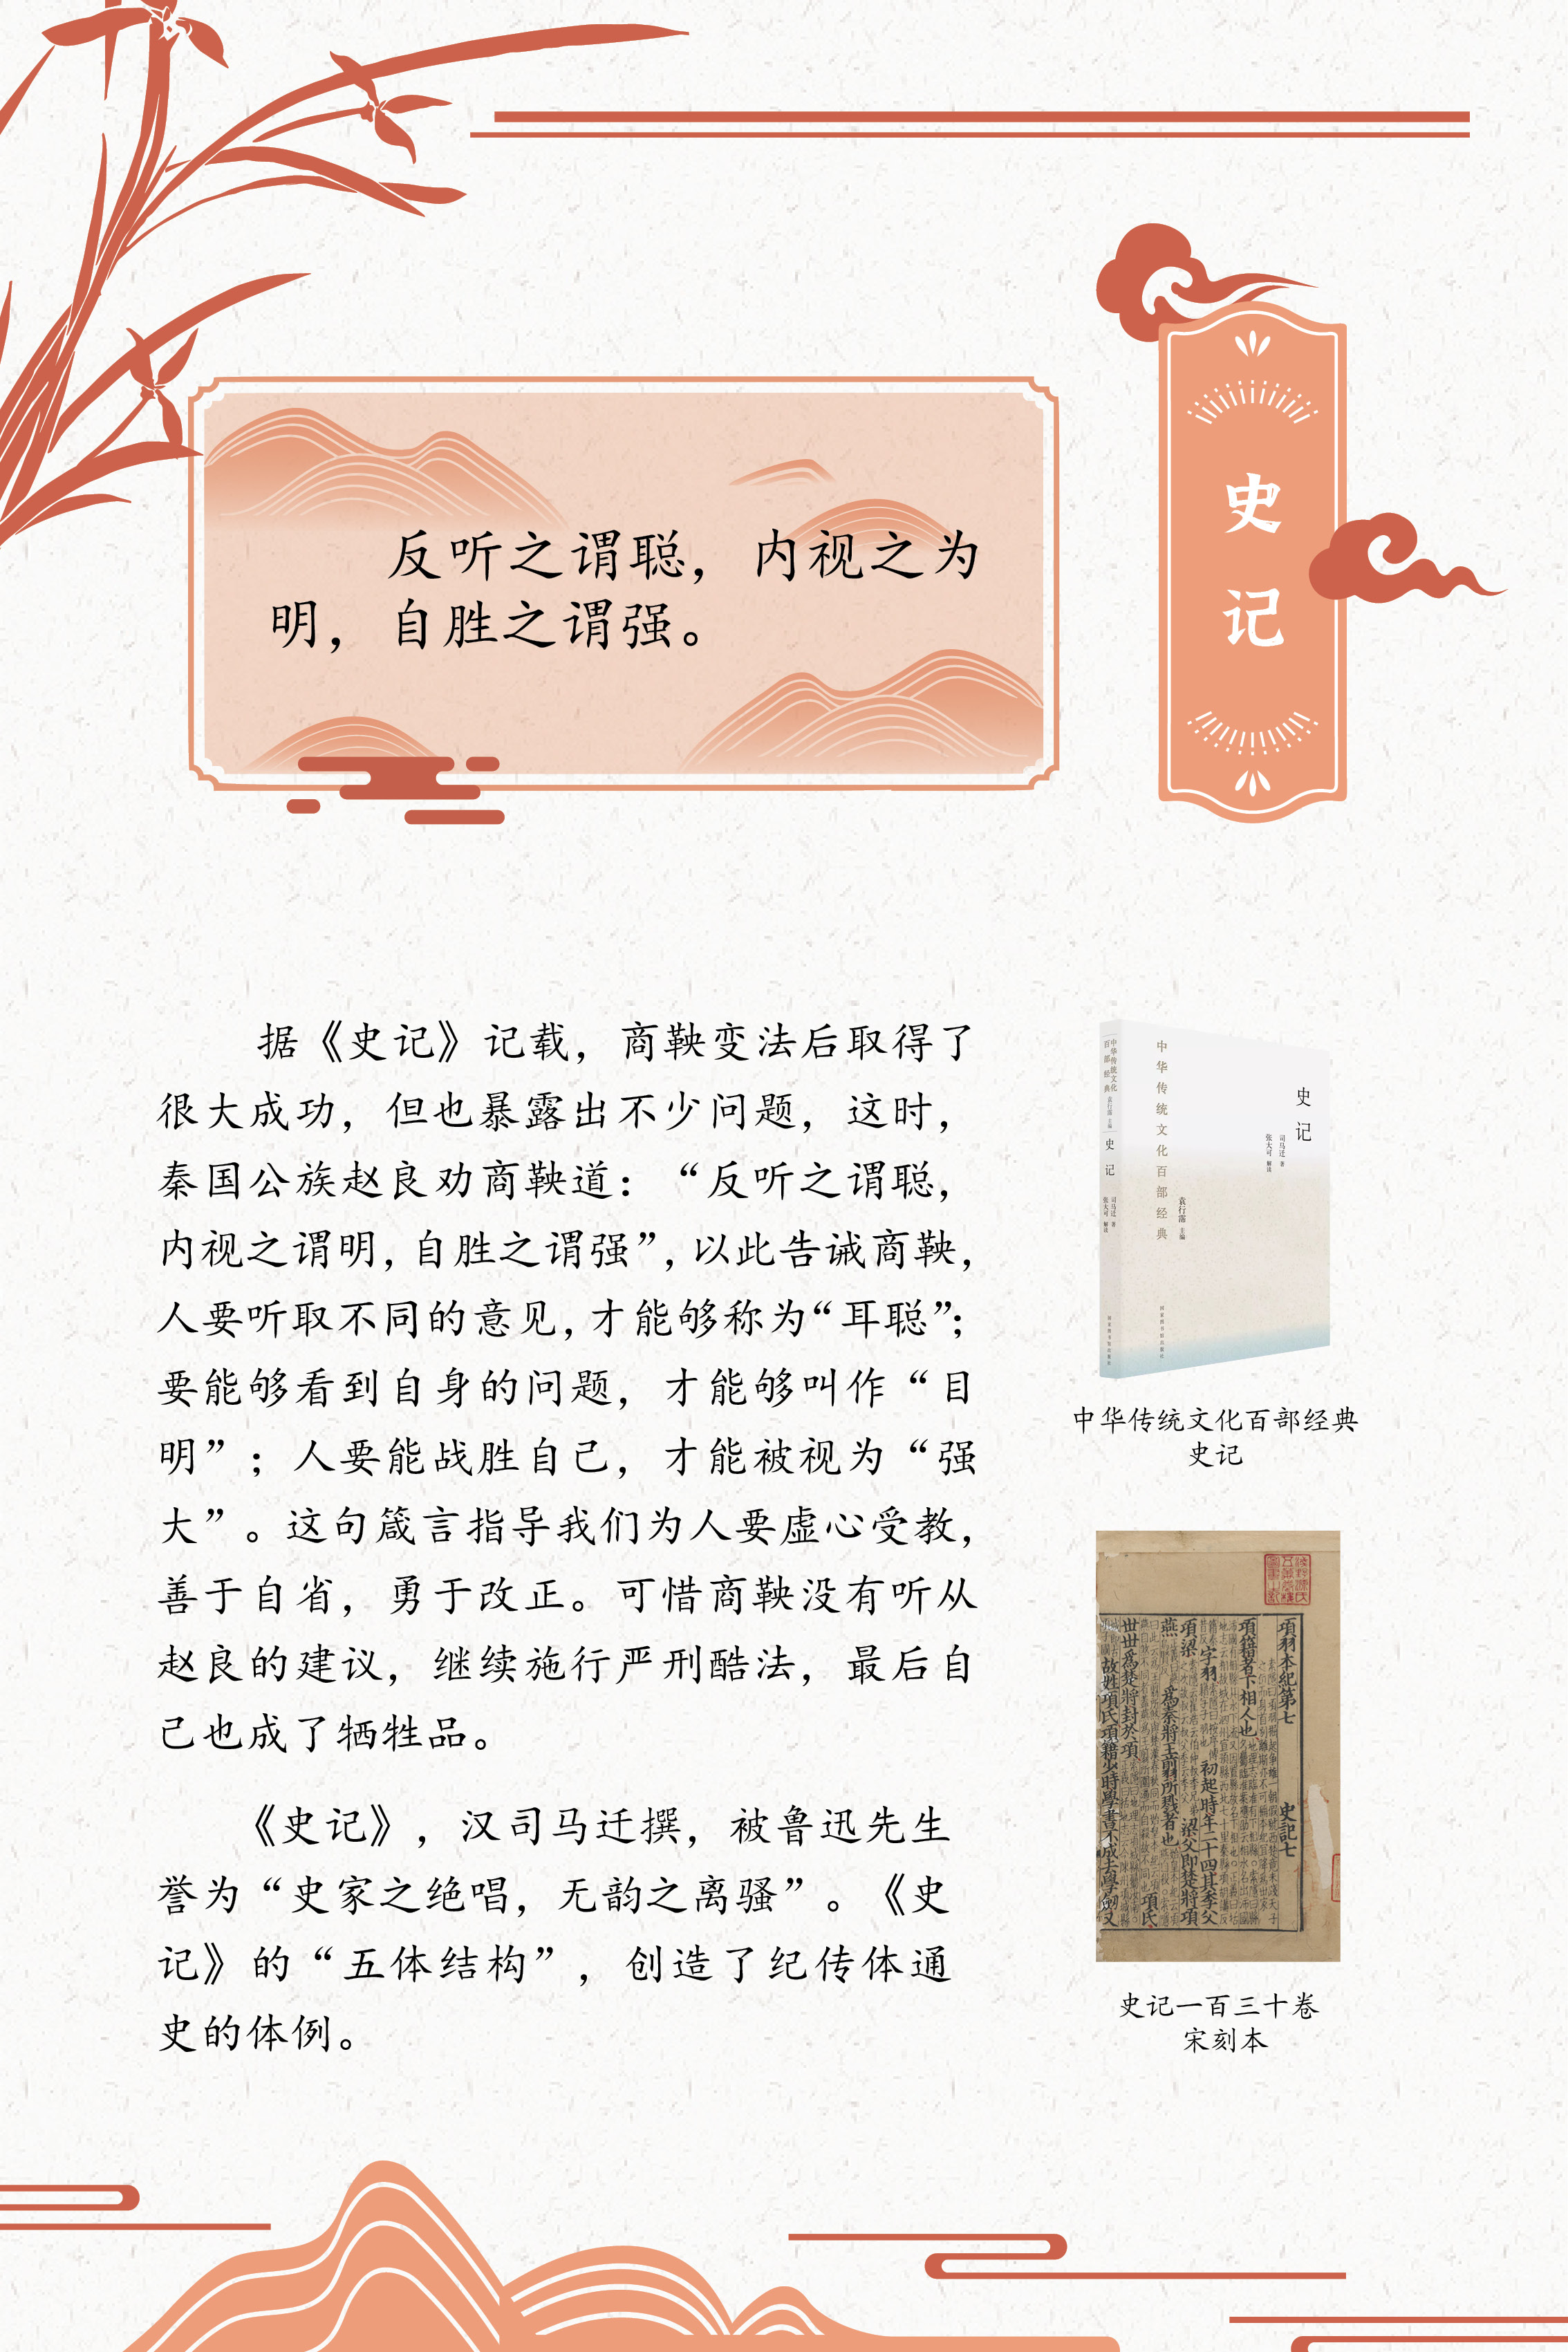 典籍里的中国智慧——《中华传统文化百部经典》阅读推广展_图14